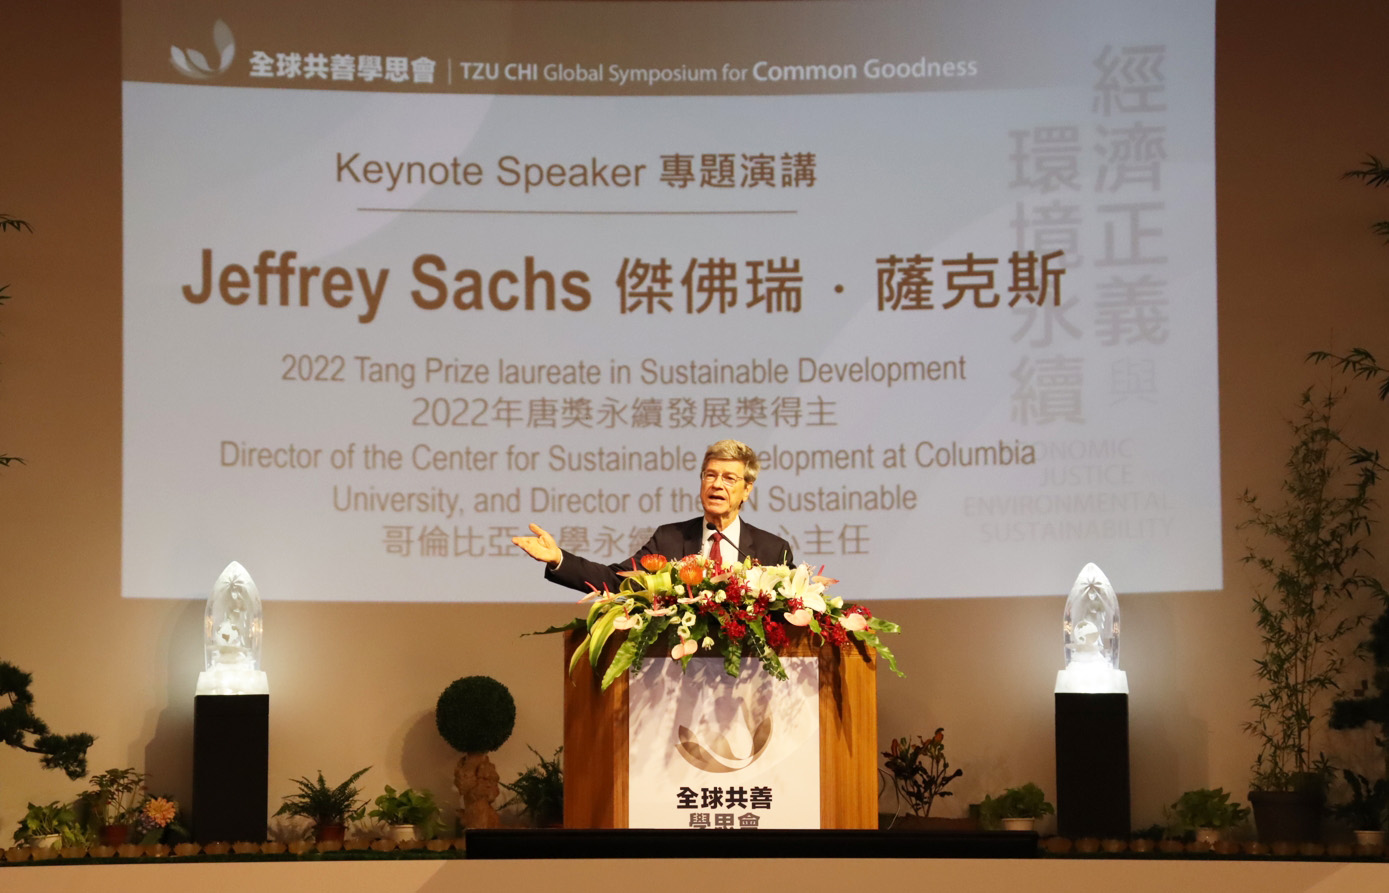 「第八屆全球共善學思會：經濟正義與環境永續」，特地邀請第五屆唐獎2022年永續發展獎的學者傑佛瑞・薩克斯(Jeffrey Sachs)發表演說。